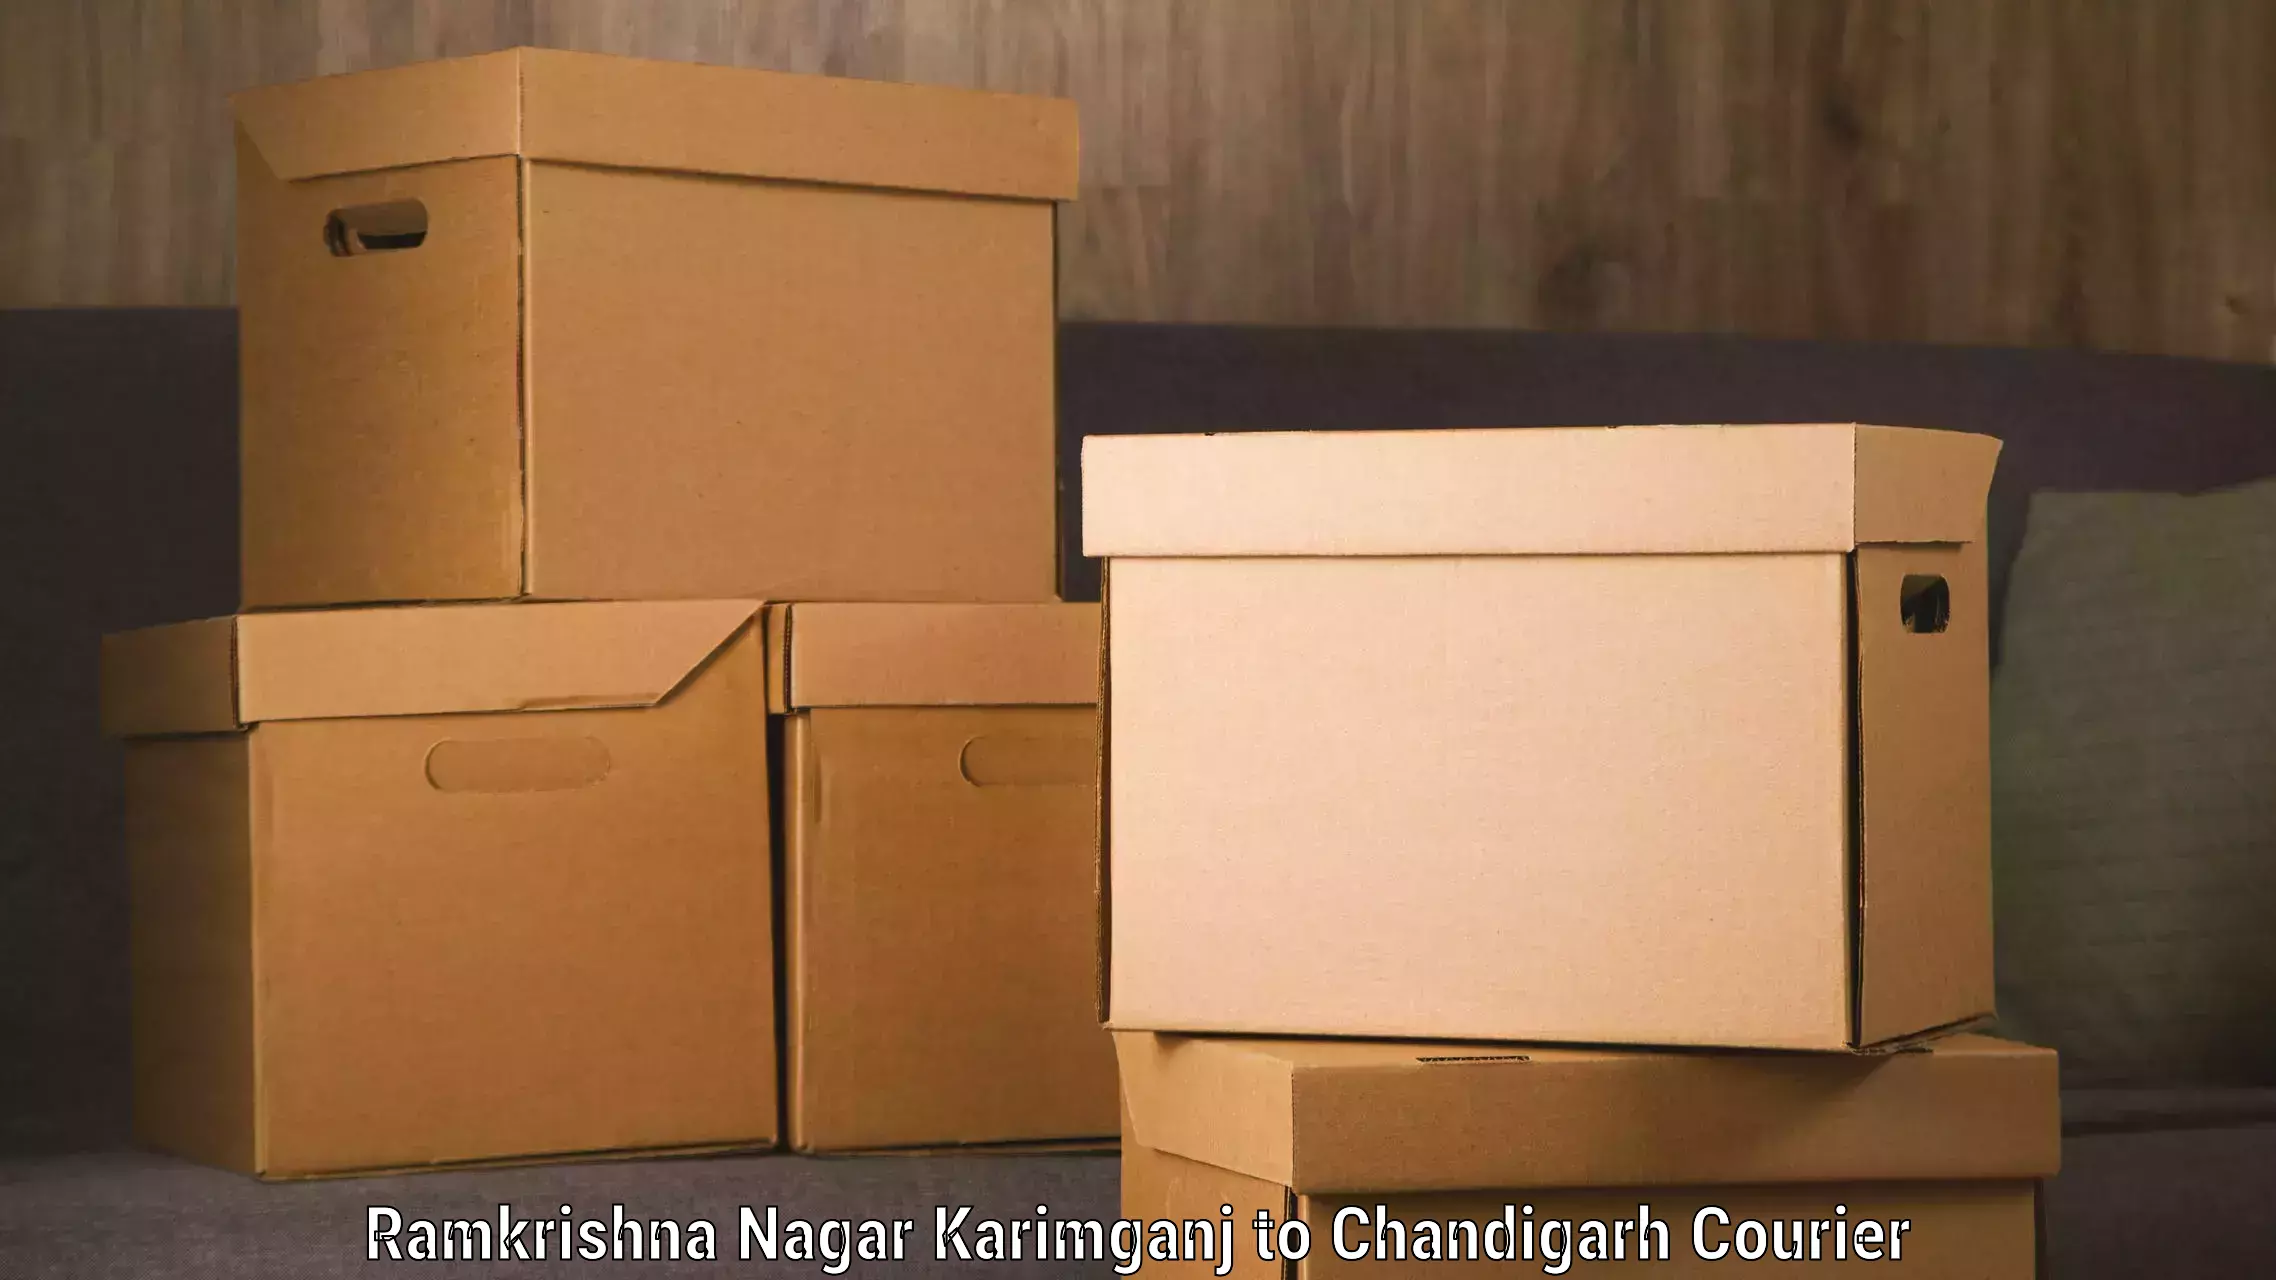 Luggage transport operations Ramkrishna Nagar Karimganj to Chandigarh